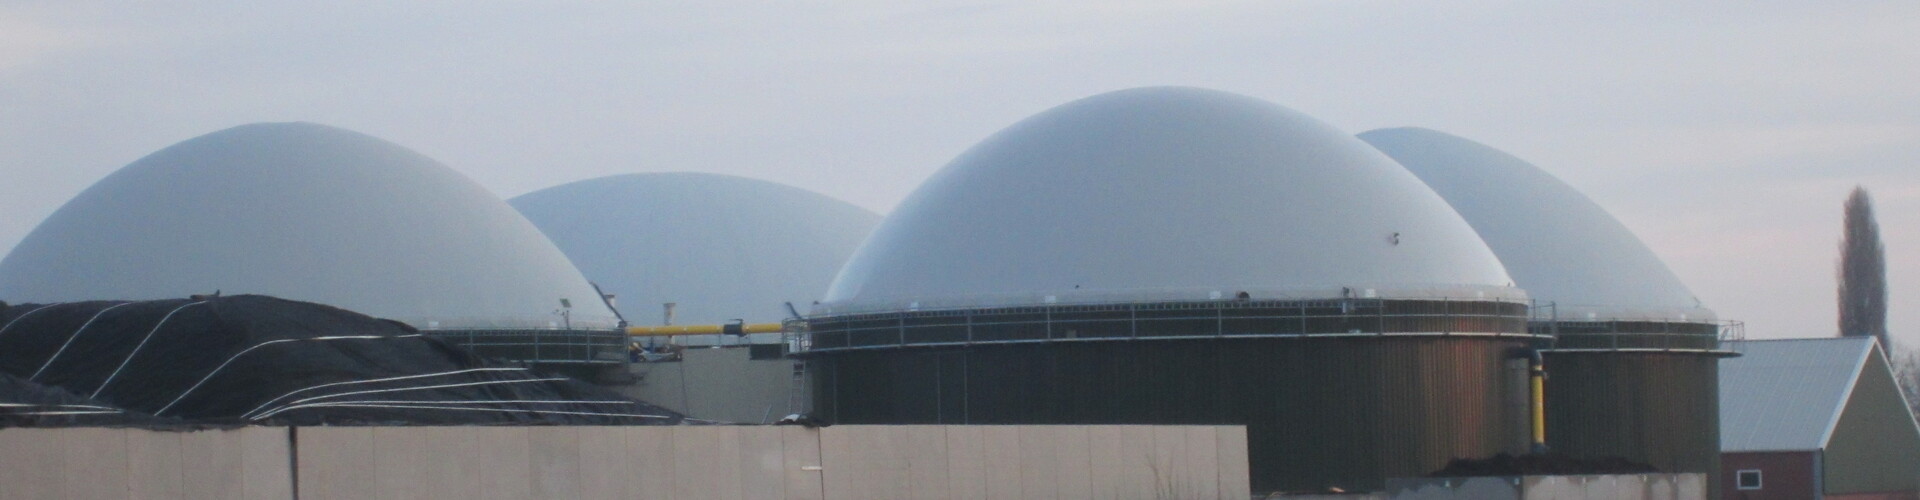 Biogasinstallatie Horst, Nederland